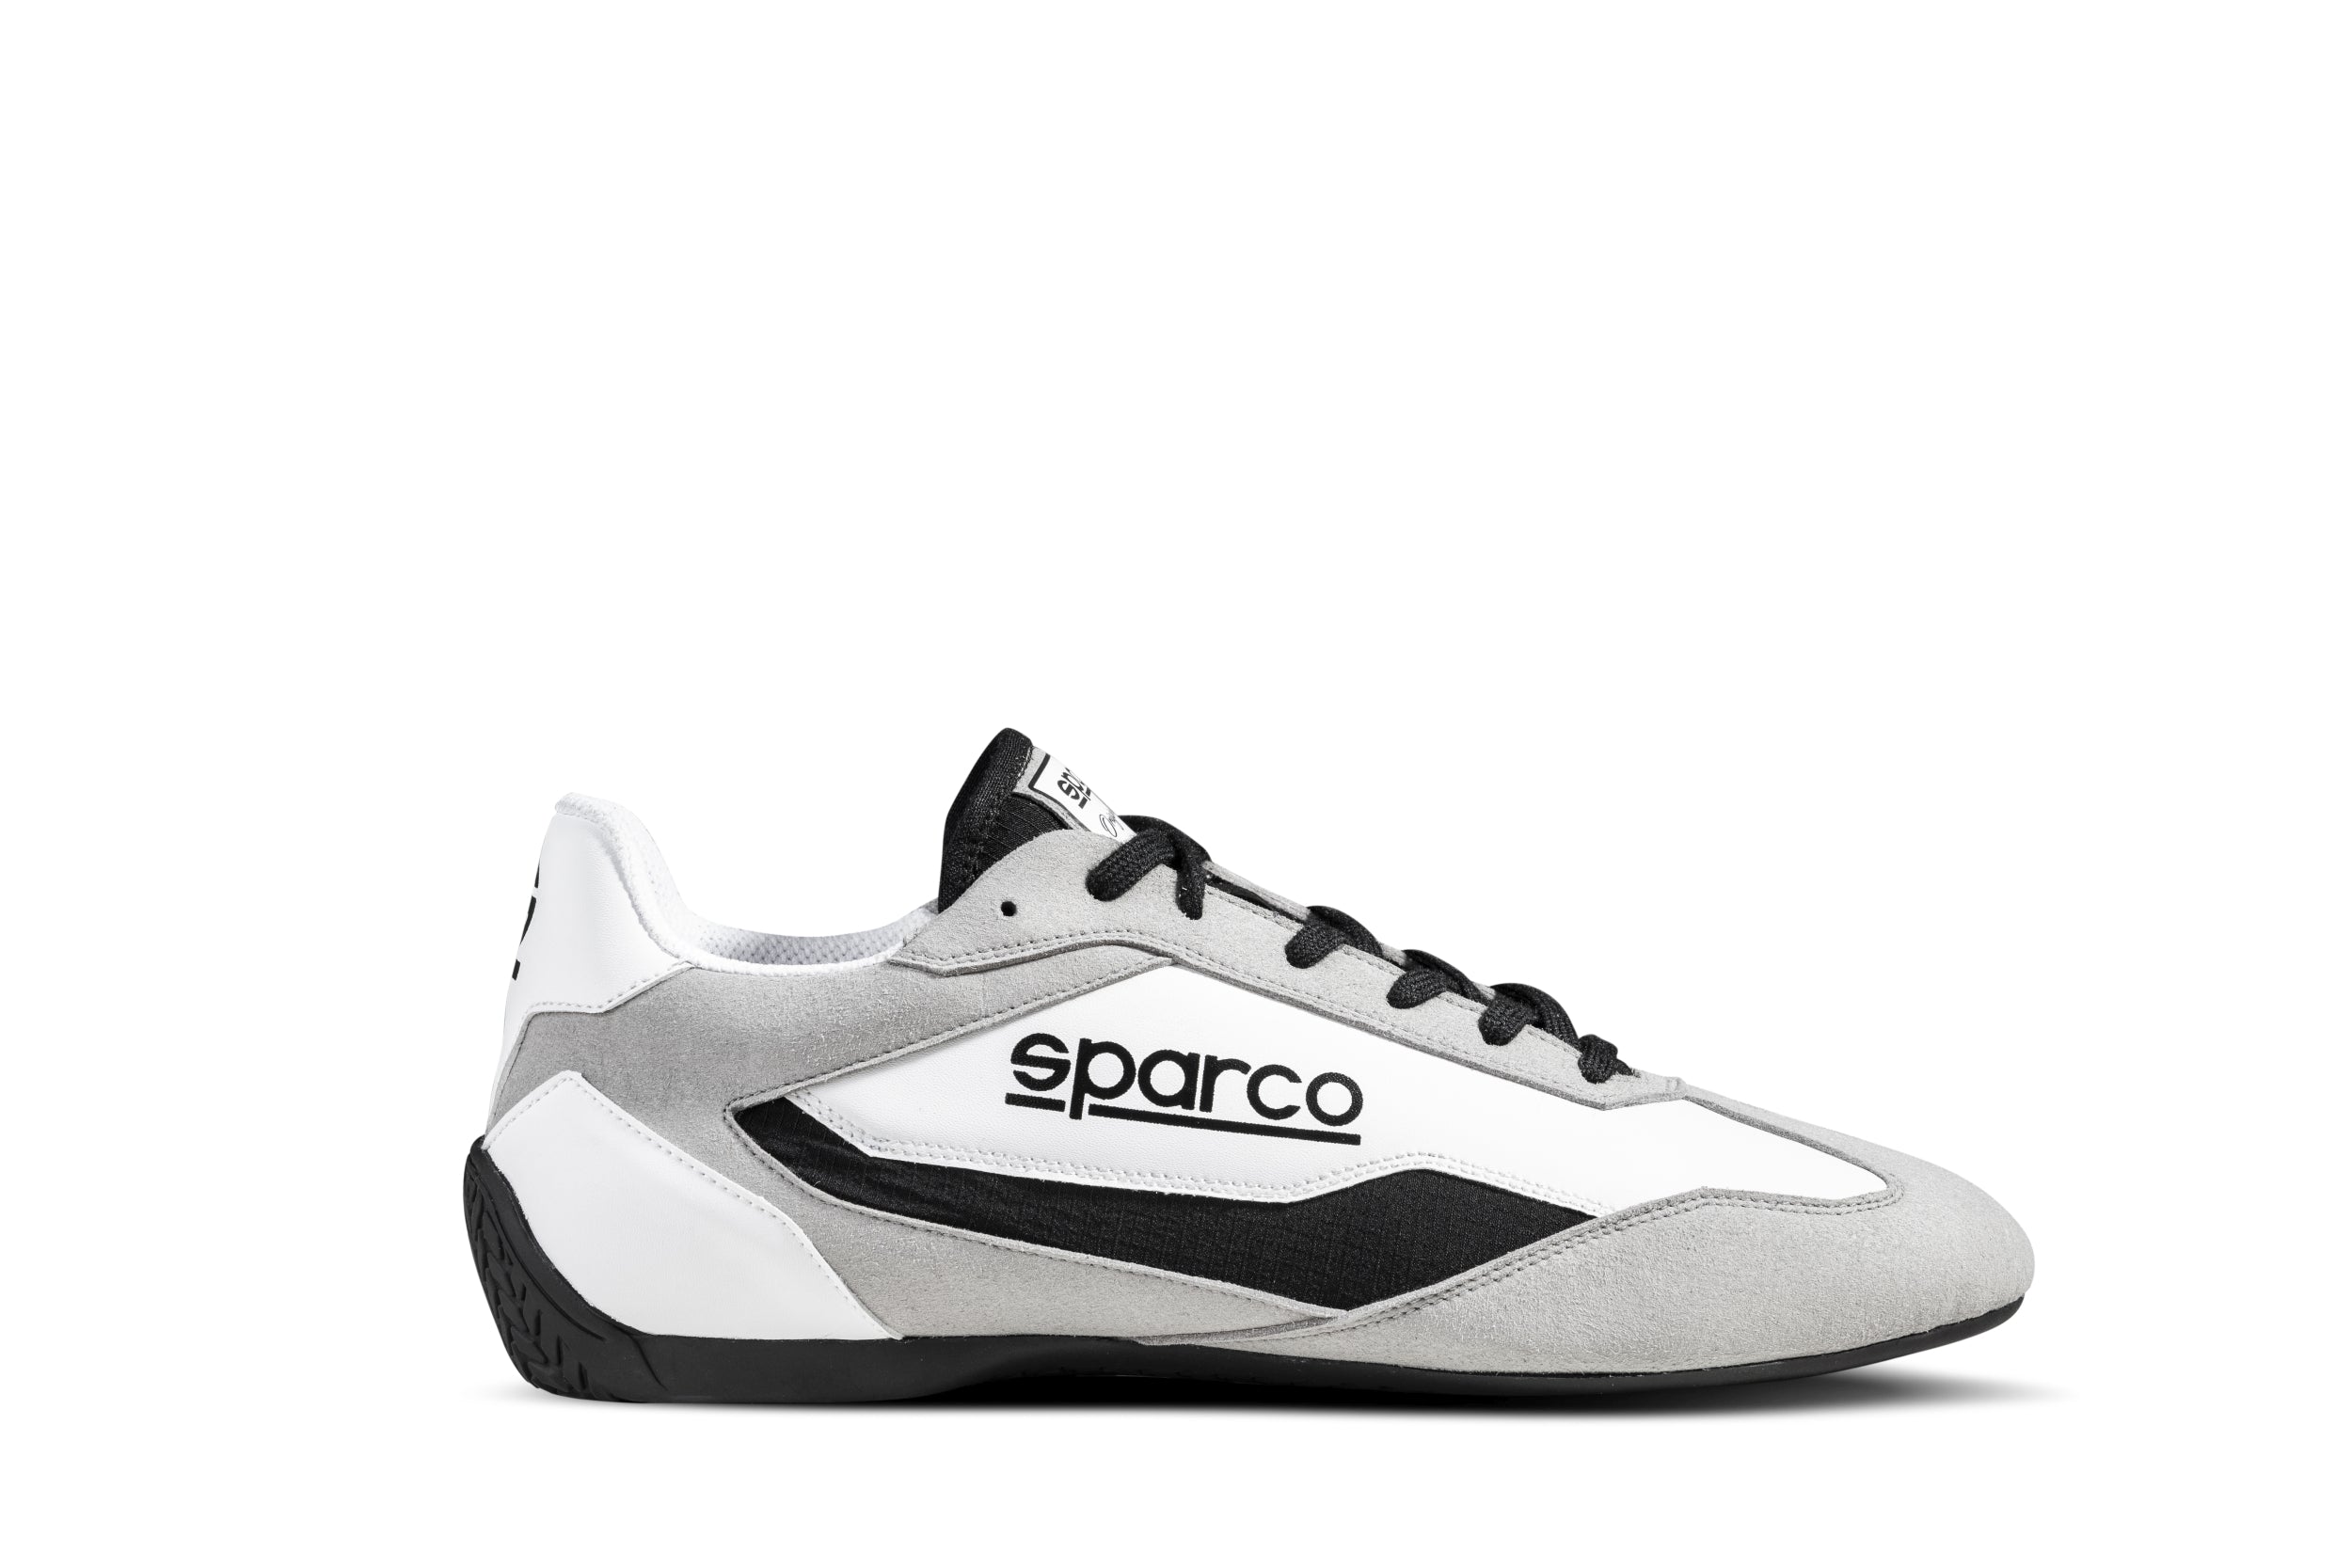 SPARCO 0012A737BINR S-DRIVE Shoes, white/black, size 37 Photo-2 